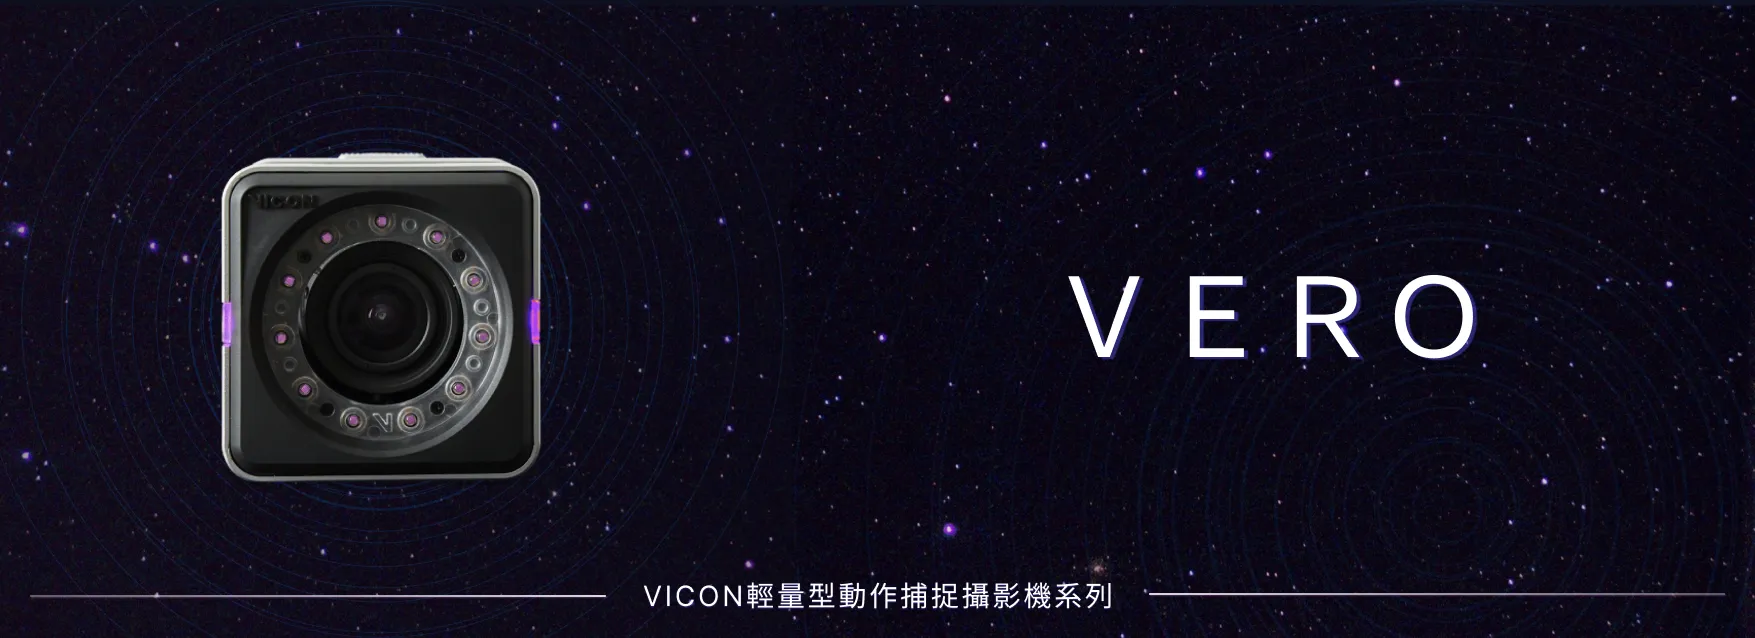 VICON動作捕捉攝影機VERO系列